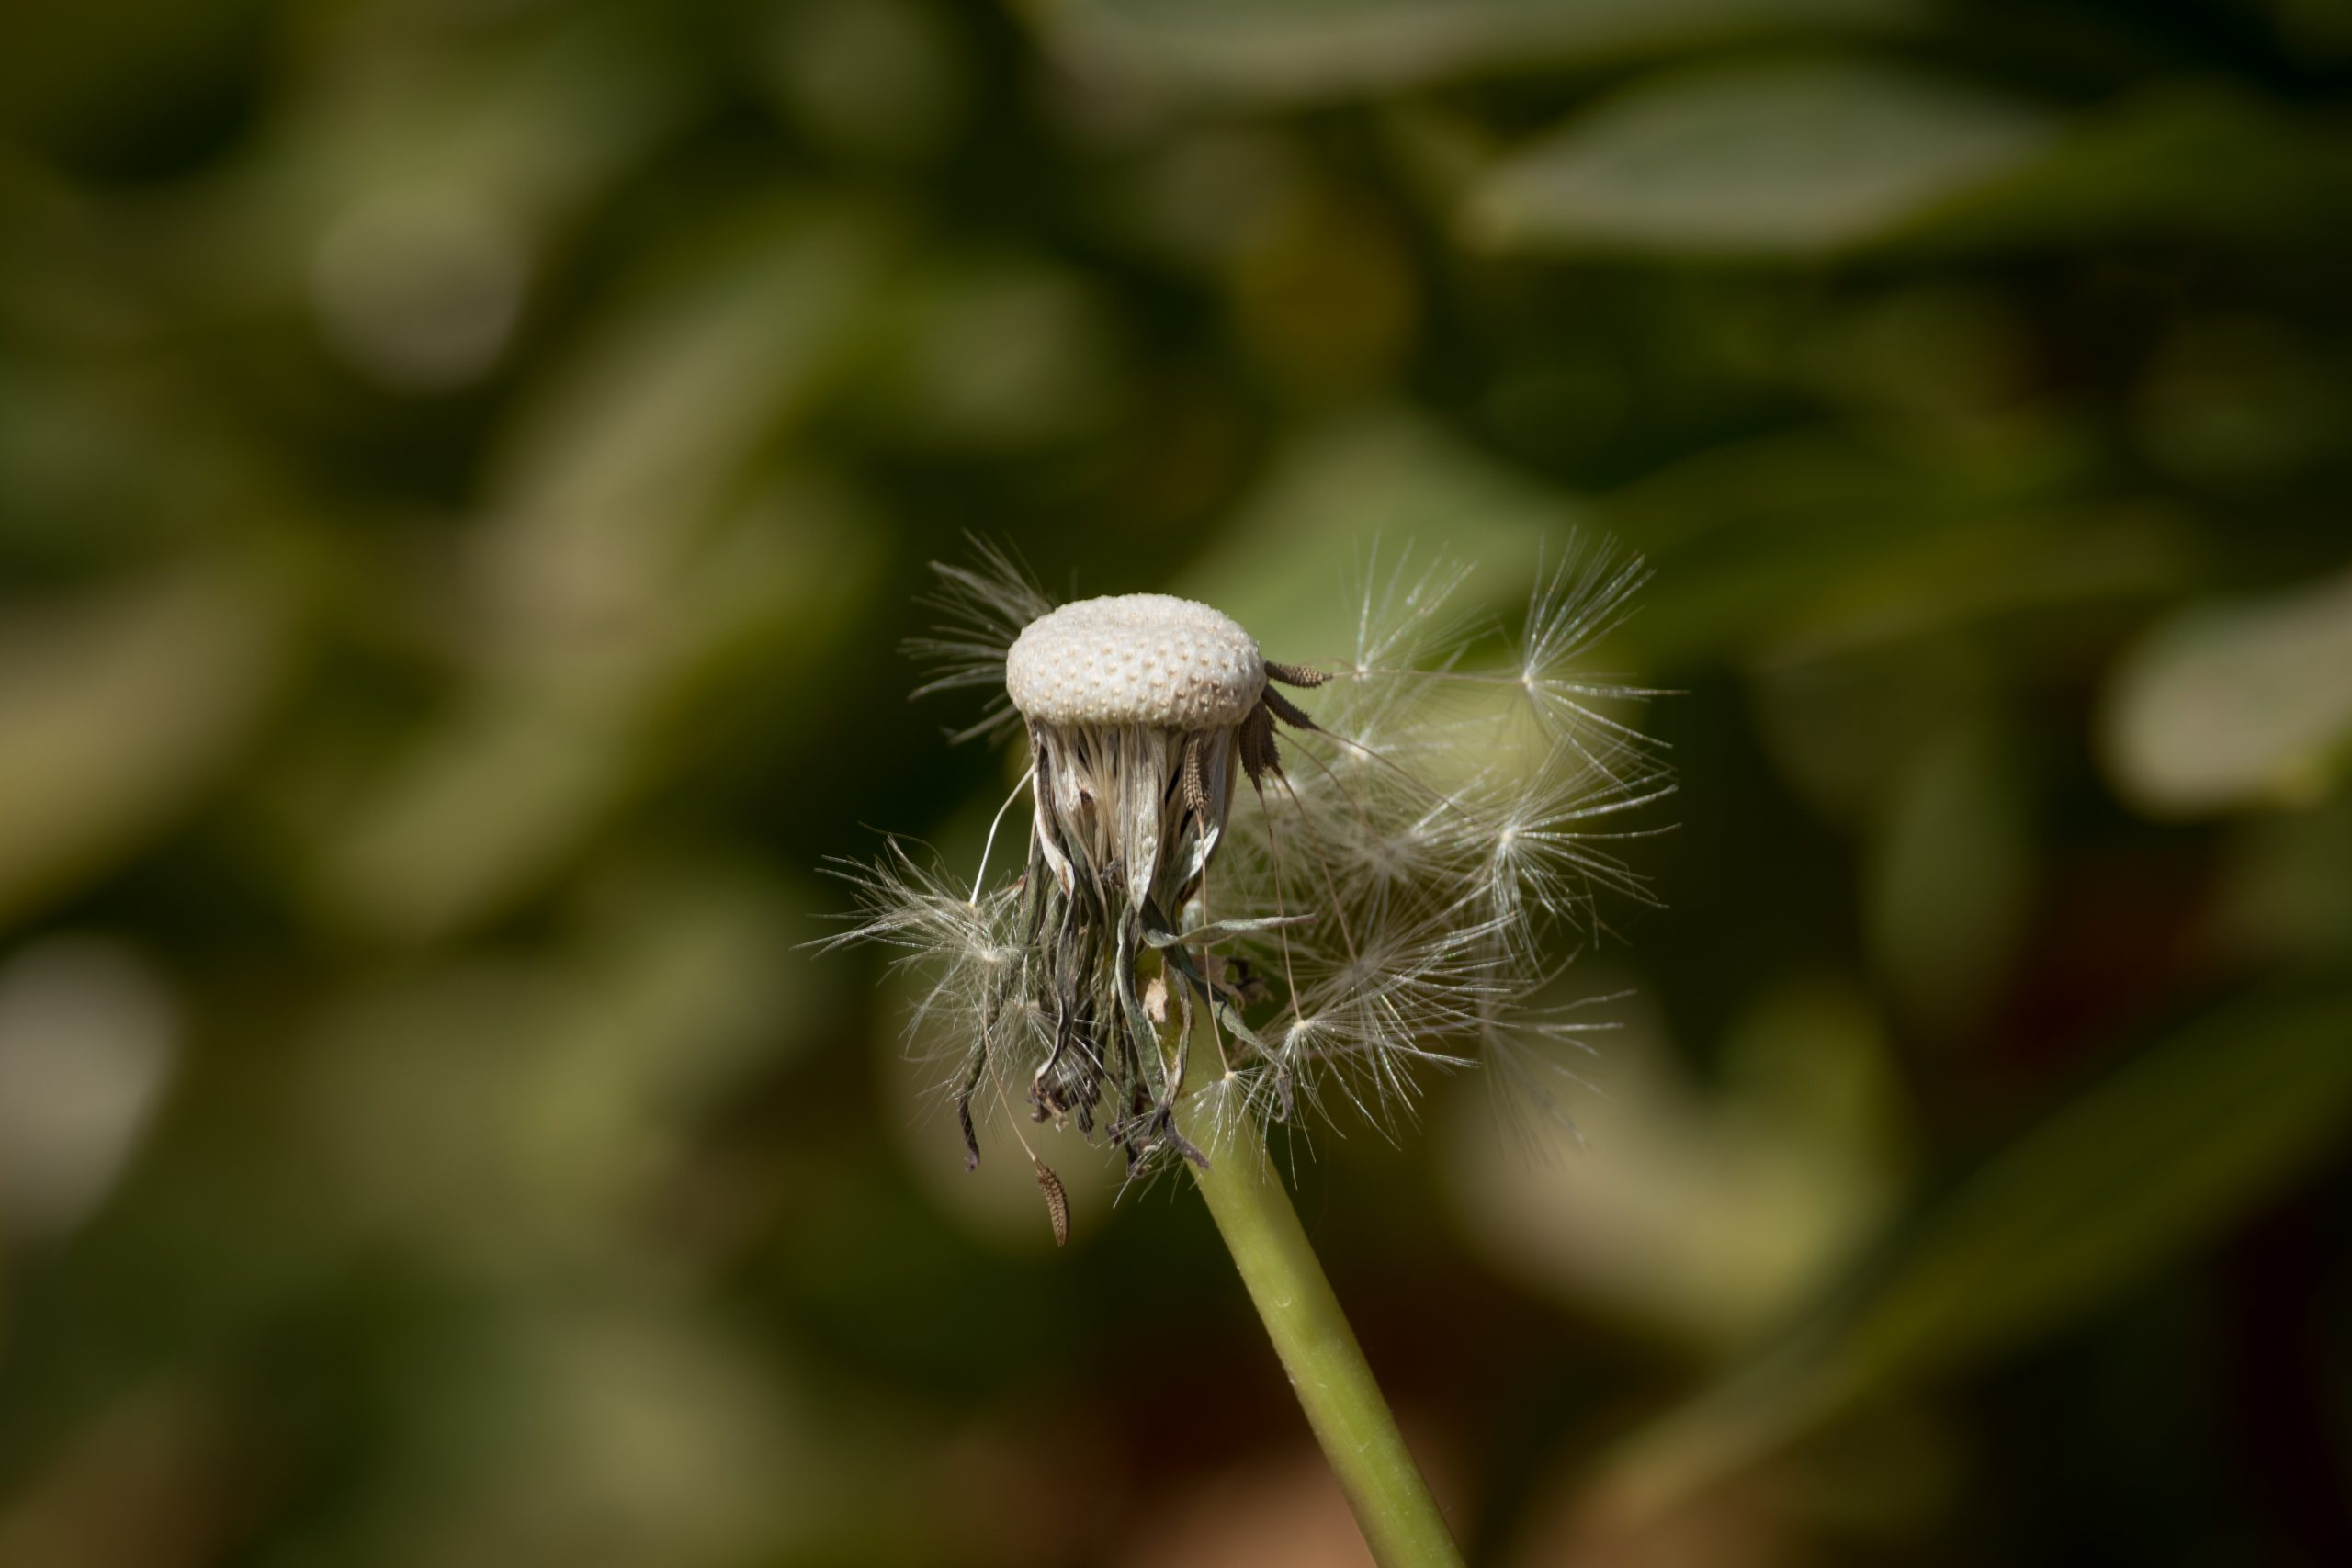 Dandelion plant